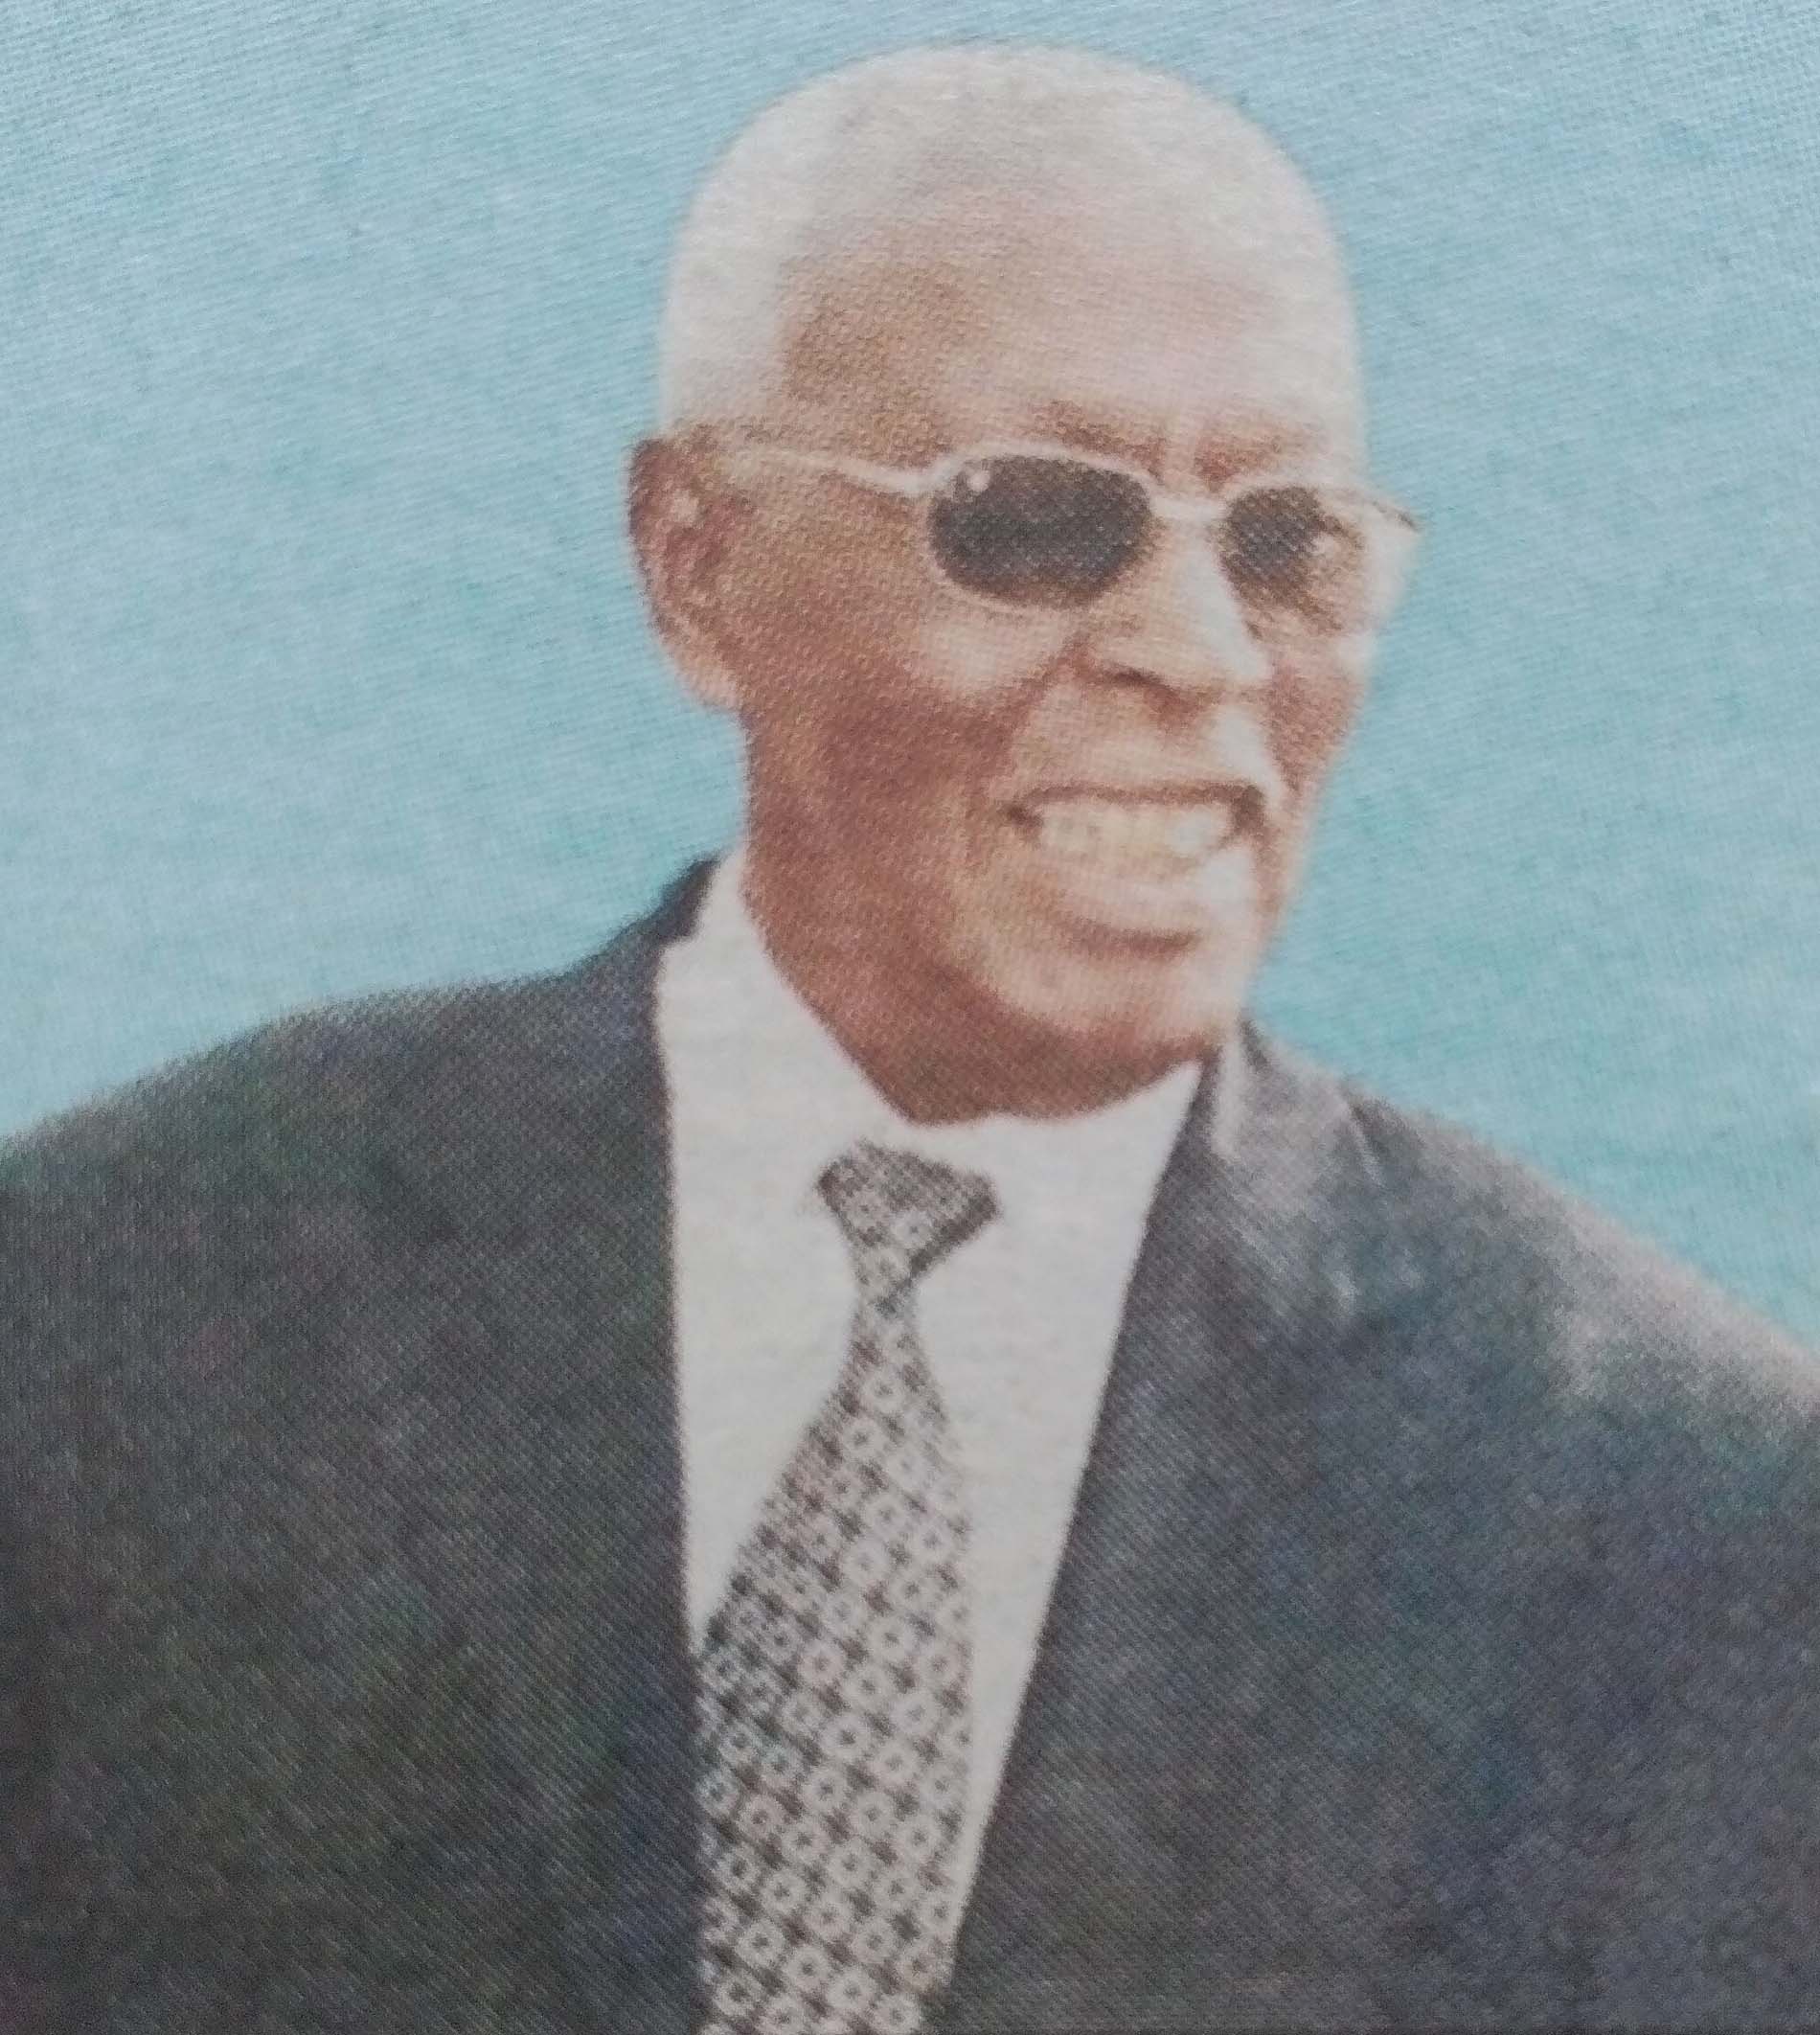 Obituary Image of Mzee M'Mbijiwe M'Mbogori